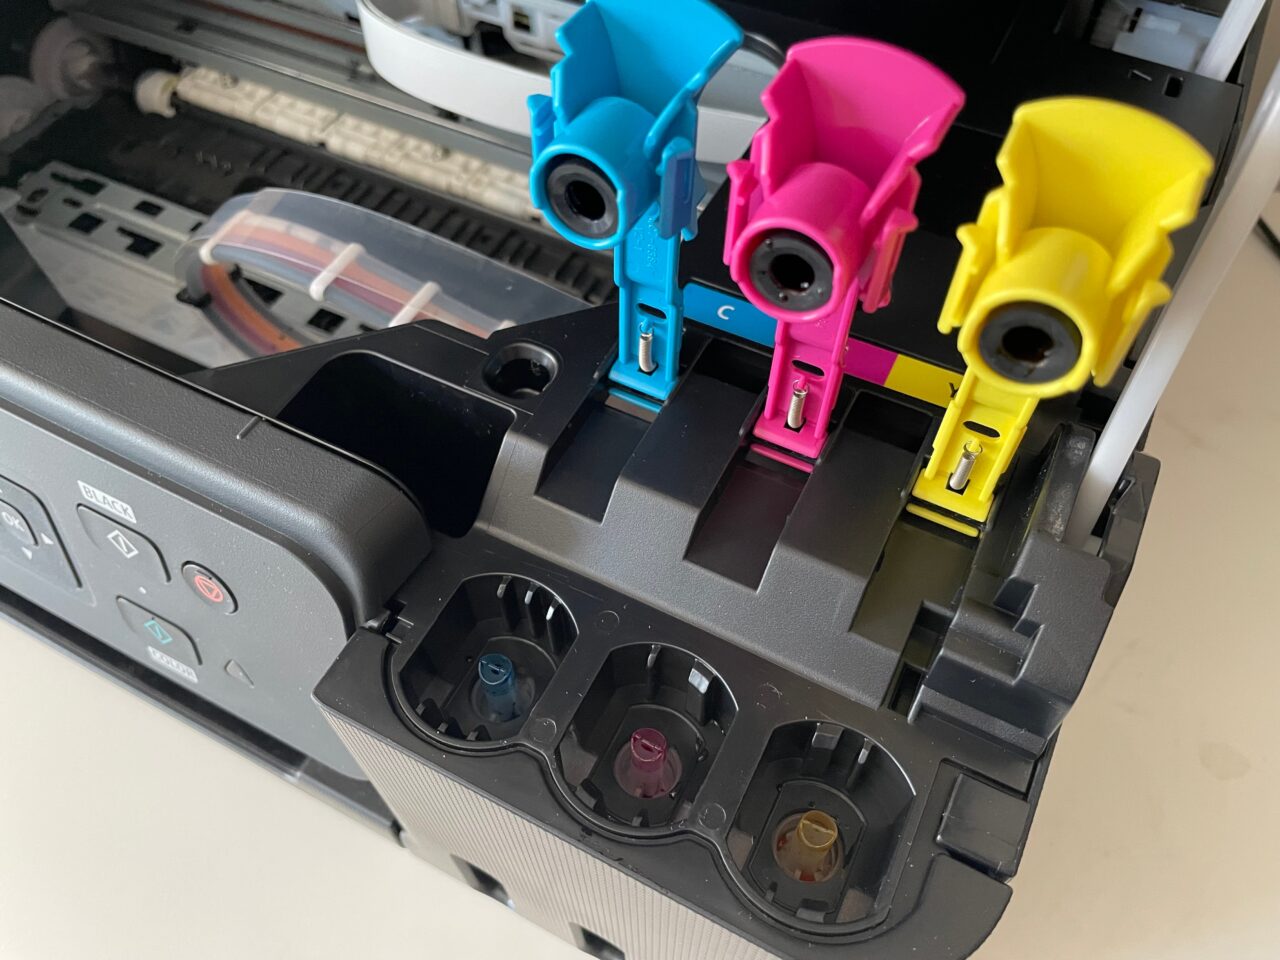 cartuchos coloridos abertos para impressora canon g3470